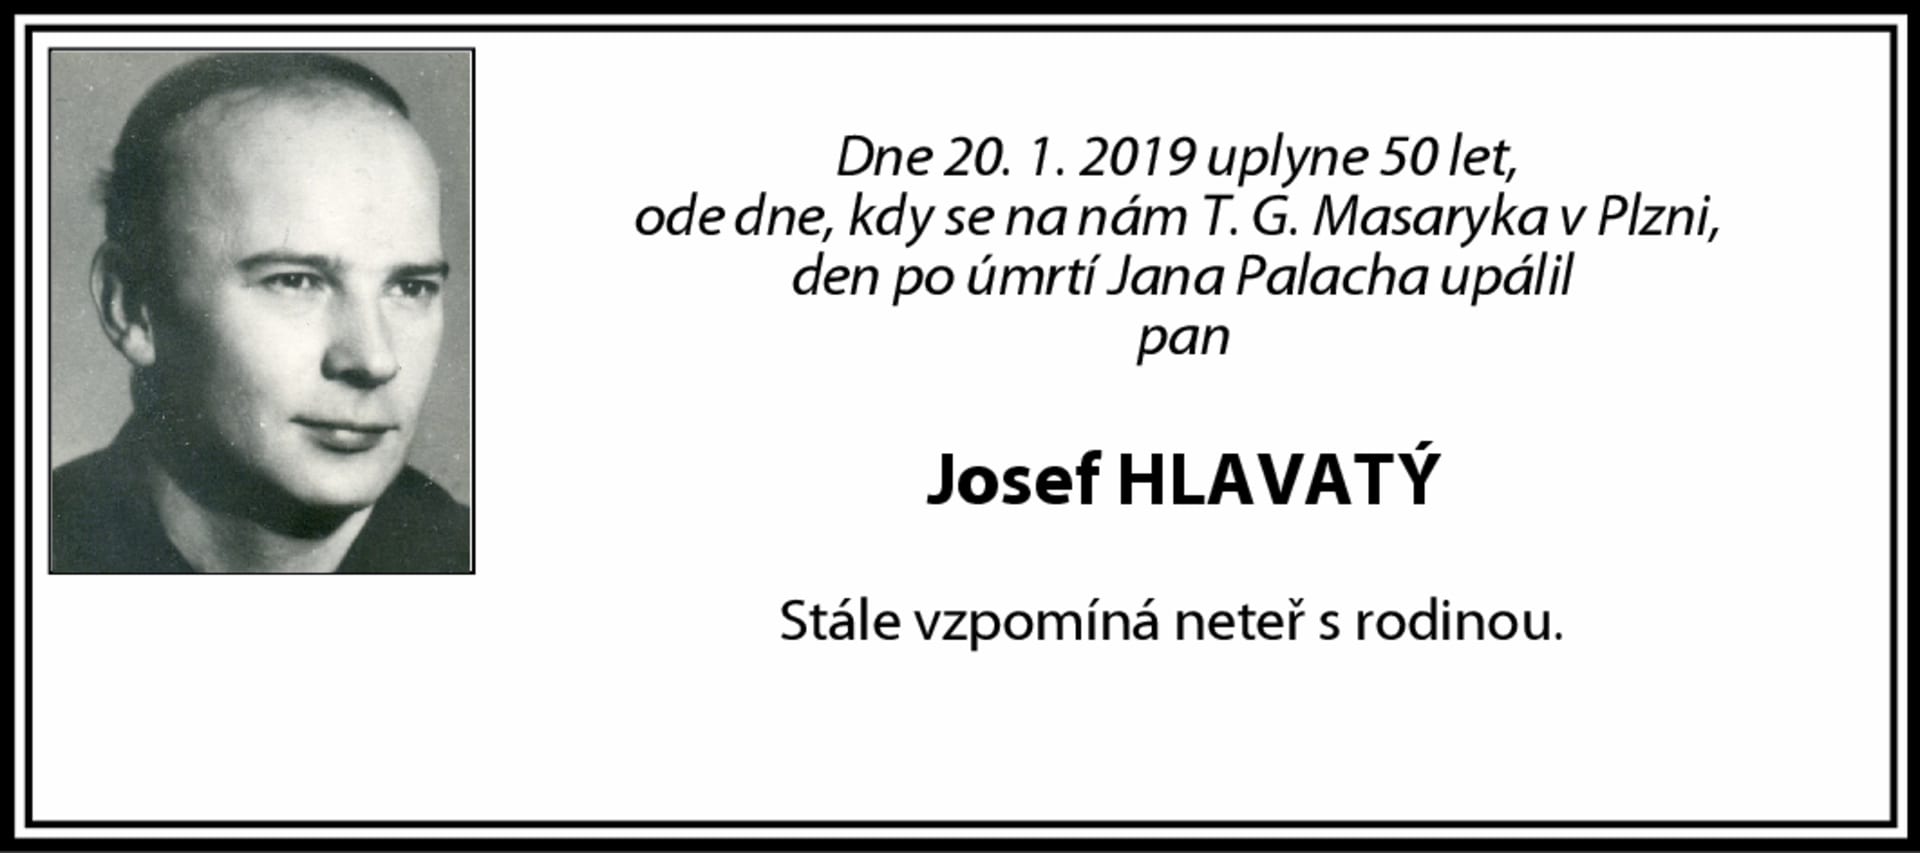 Vzpomínka rodiny na upáleného Josefa Hlavatého z roku 2019. 